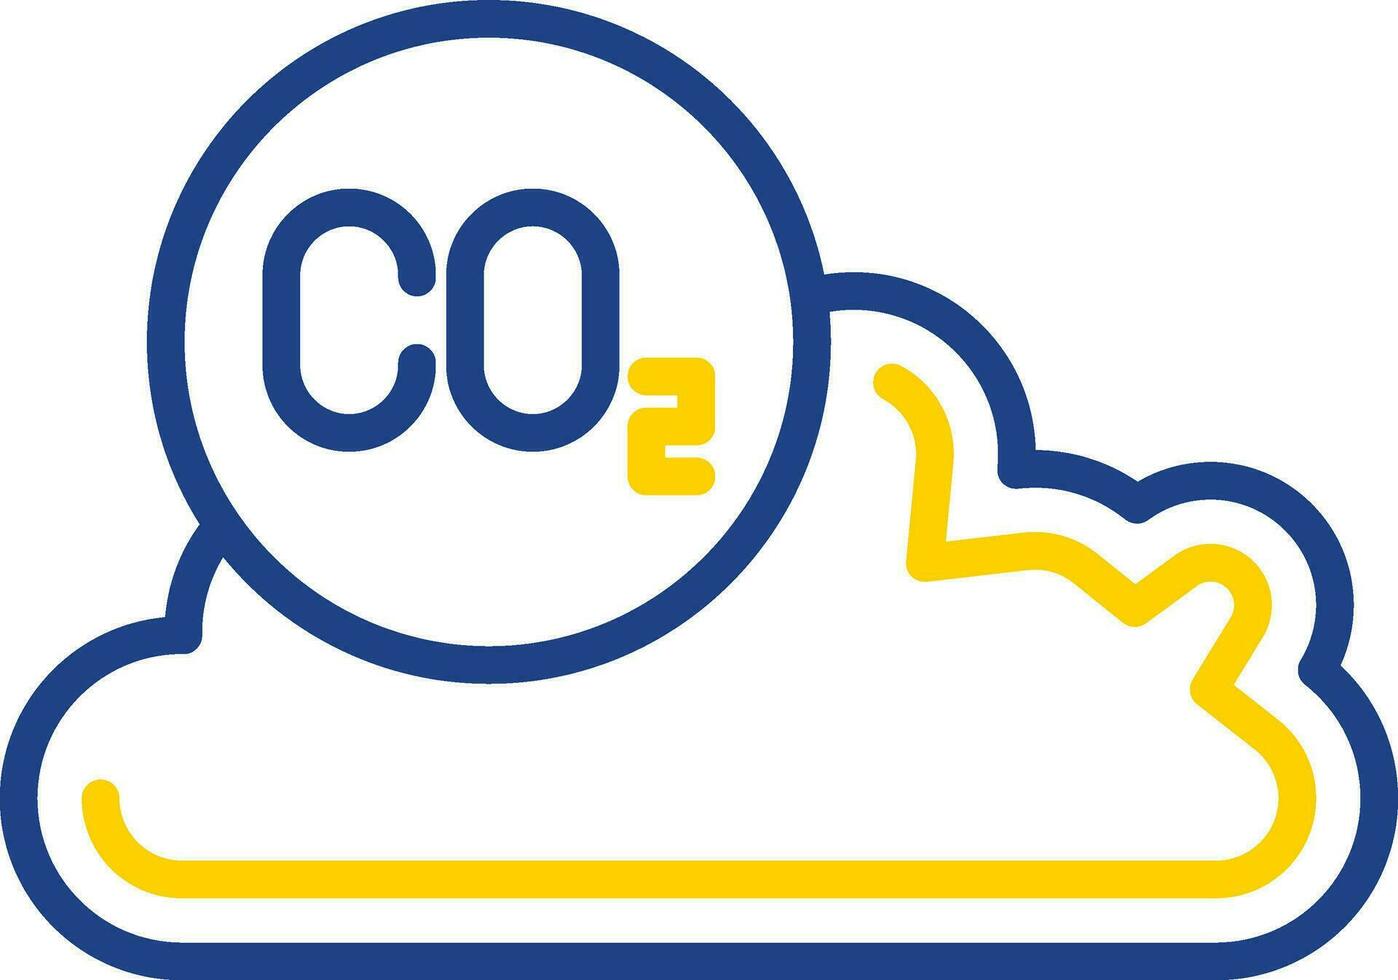 carbón dióxido vector icono diseño